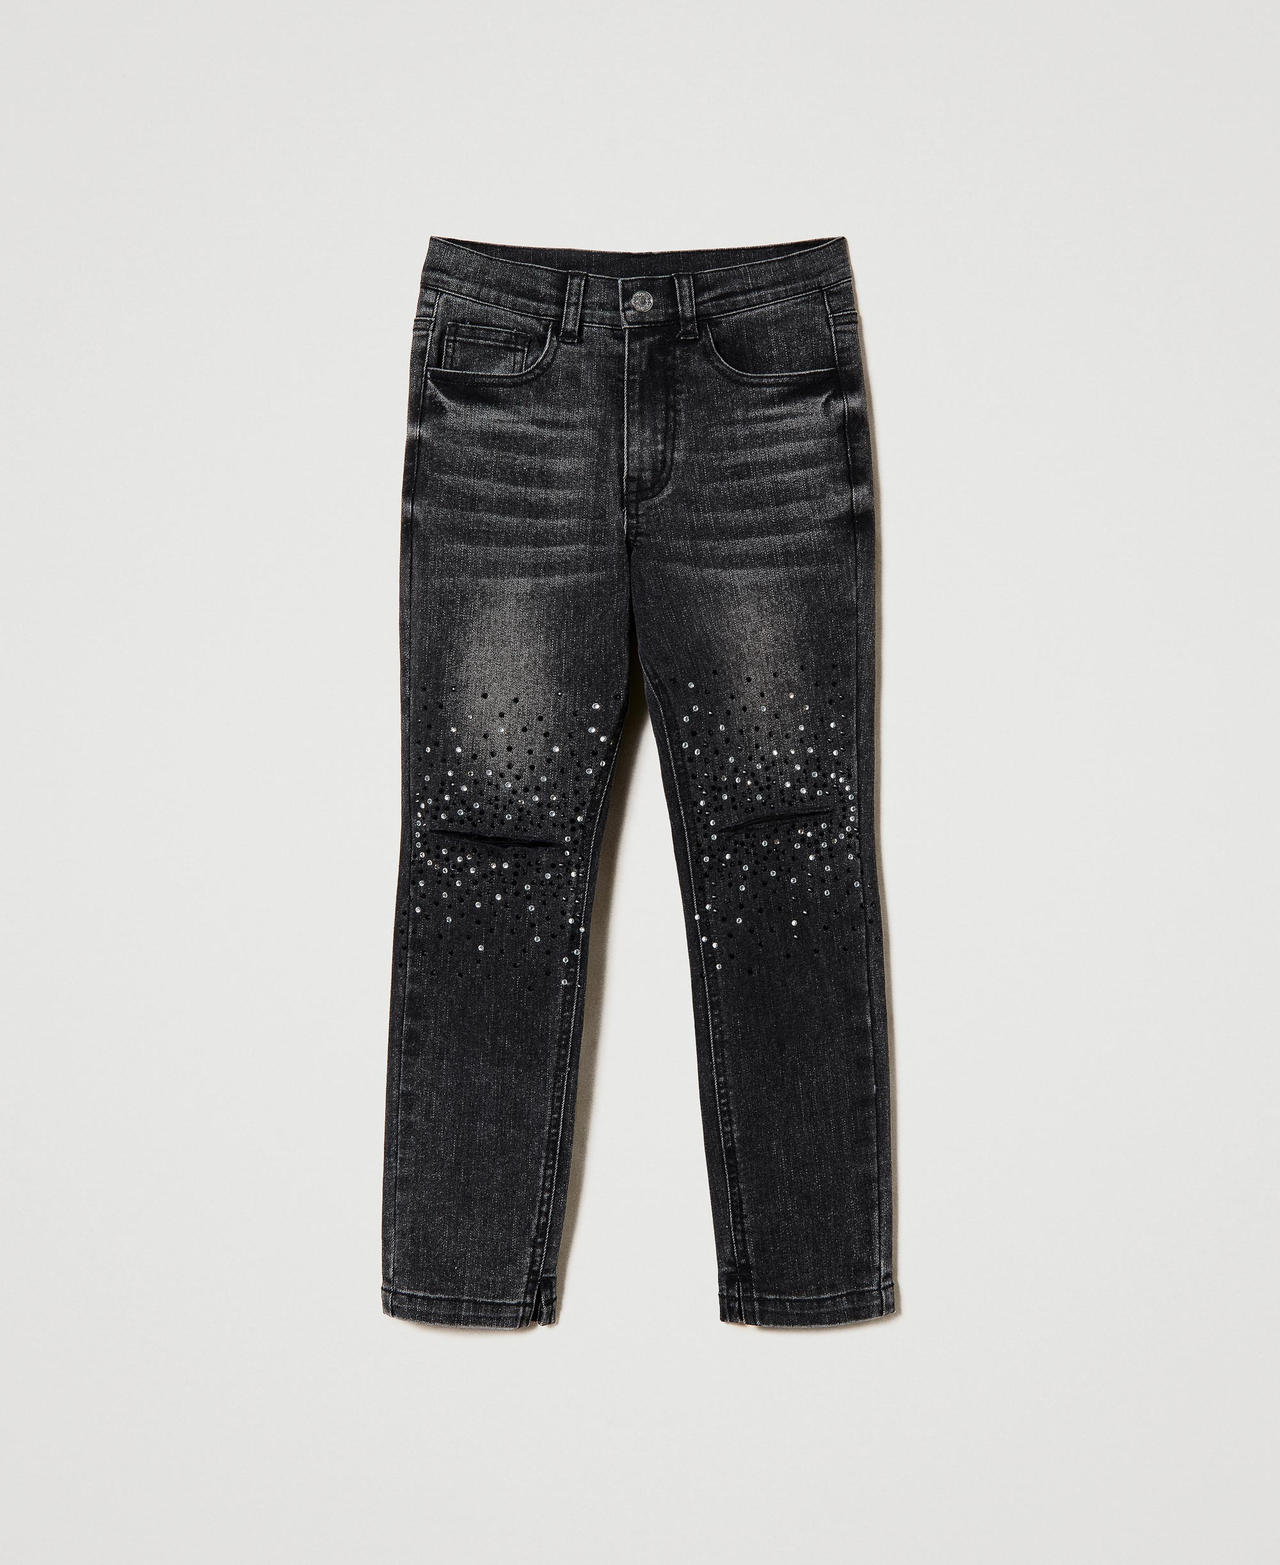 Rhinestone skinny jeans Rhinestones Black Denim Girl 232GJ2360-0S